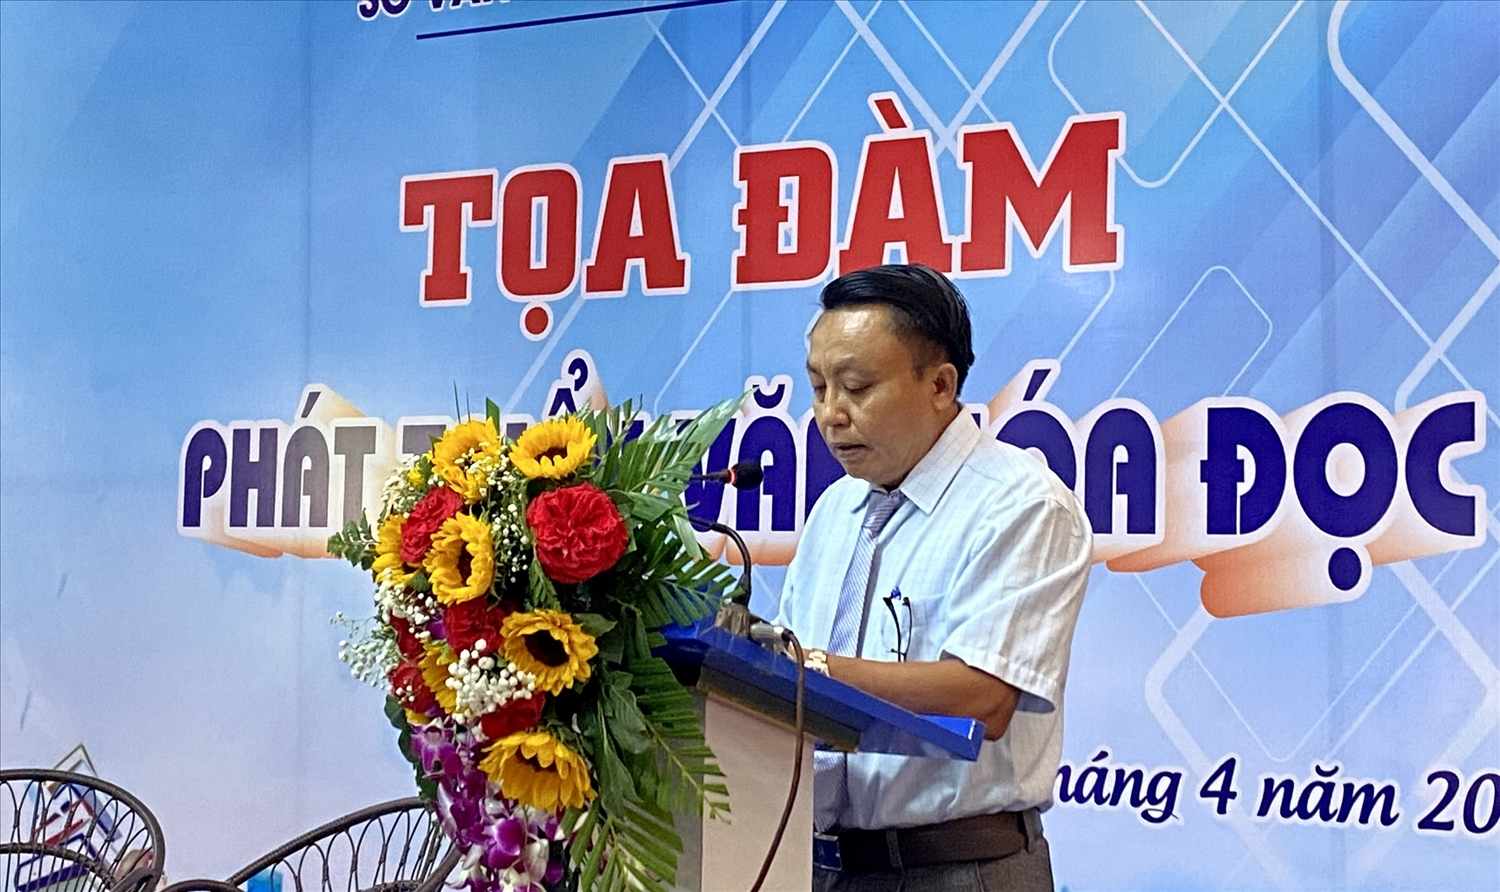 Ông Phan Văn Hoàng – Phó Giám đốc Sở Văn hóa, Thể thao và Du lịch tỉnh Kon Tum phát biểu khai mạc buổi tọa đàm